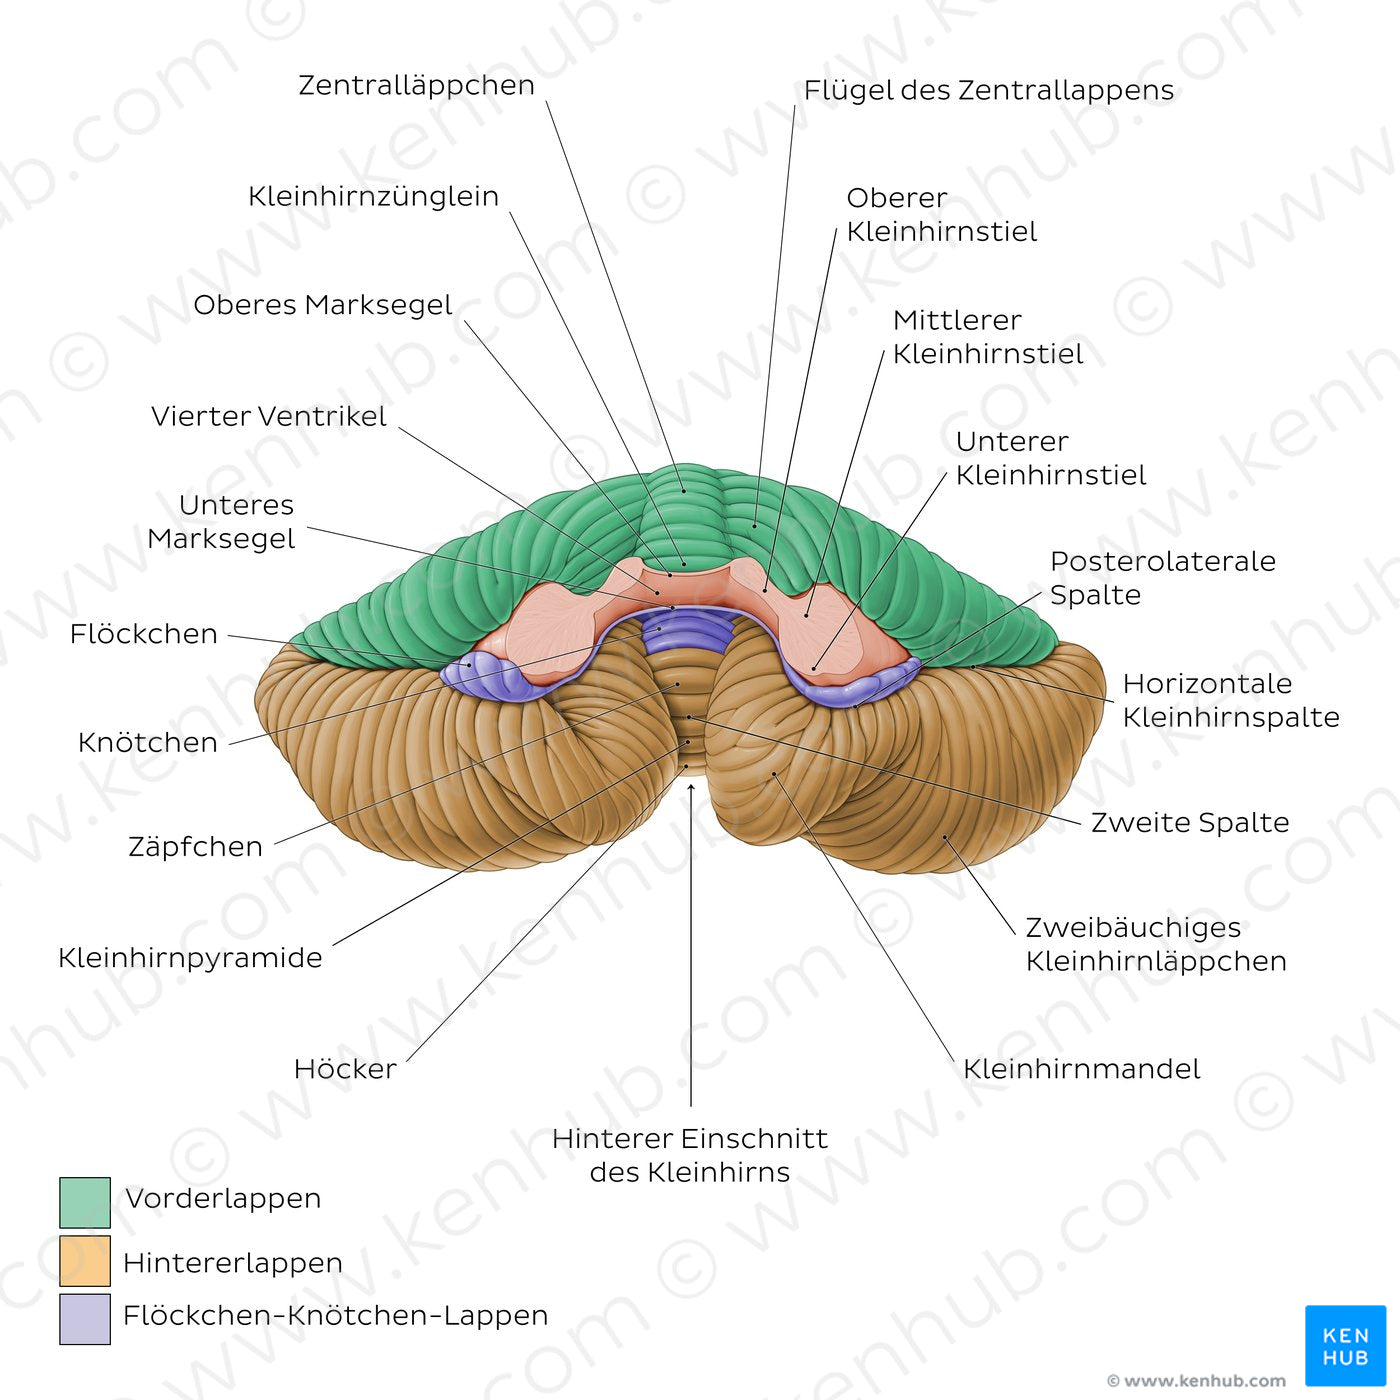 Cerebellum - Anterior view (German)